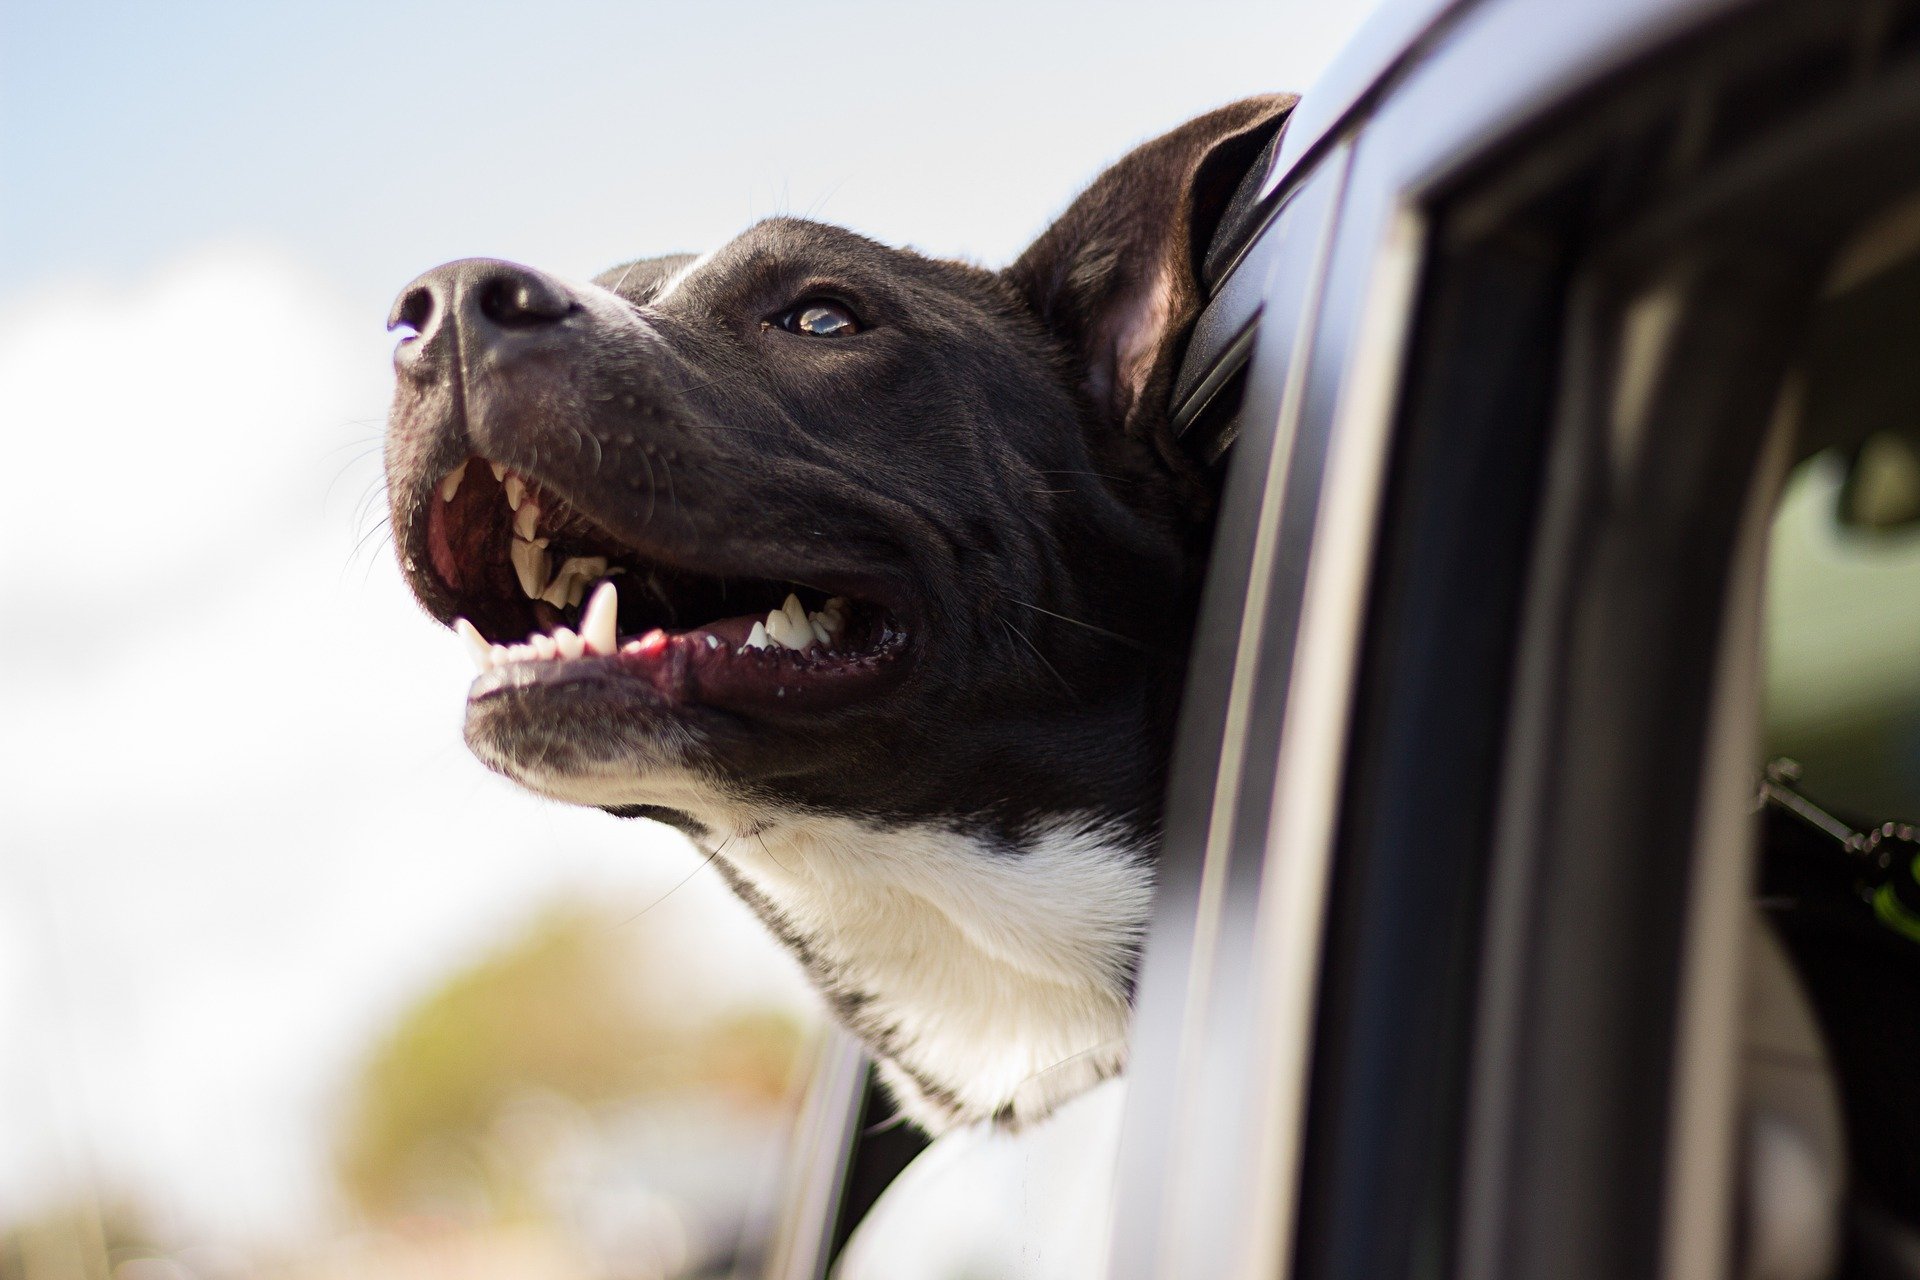 Pet no carro: veja dicas para transportar animais com segurança